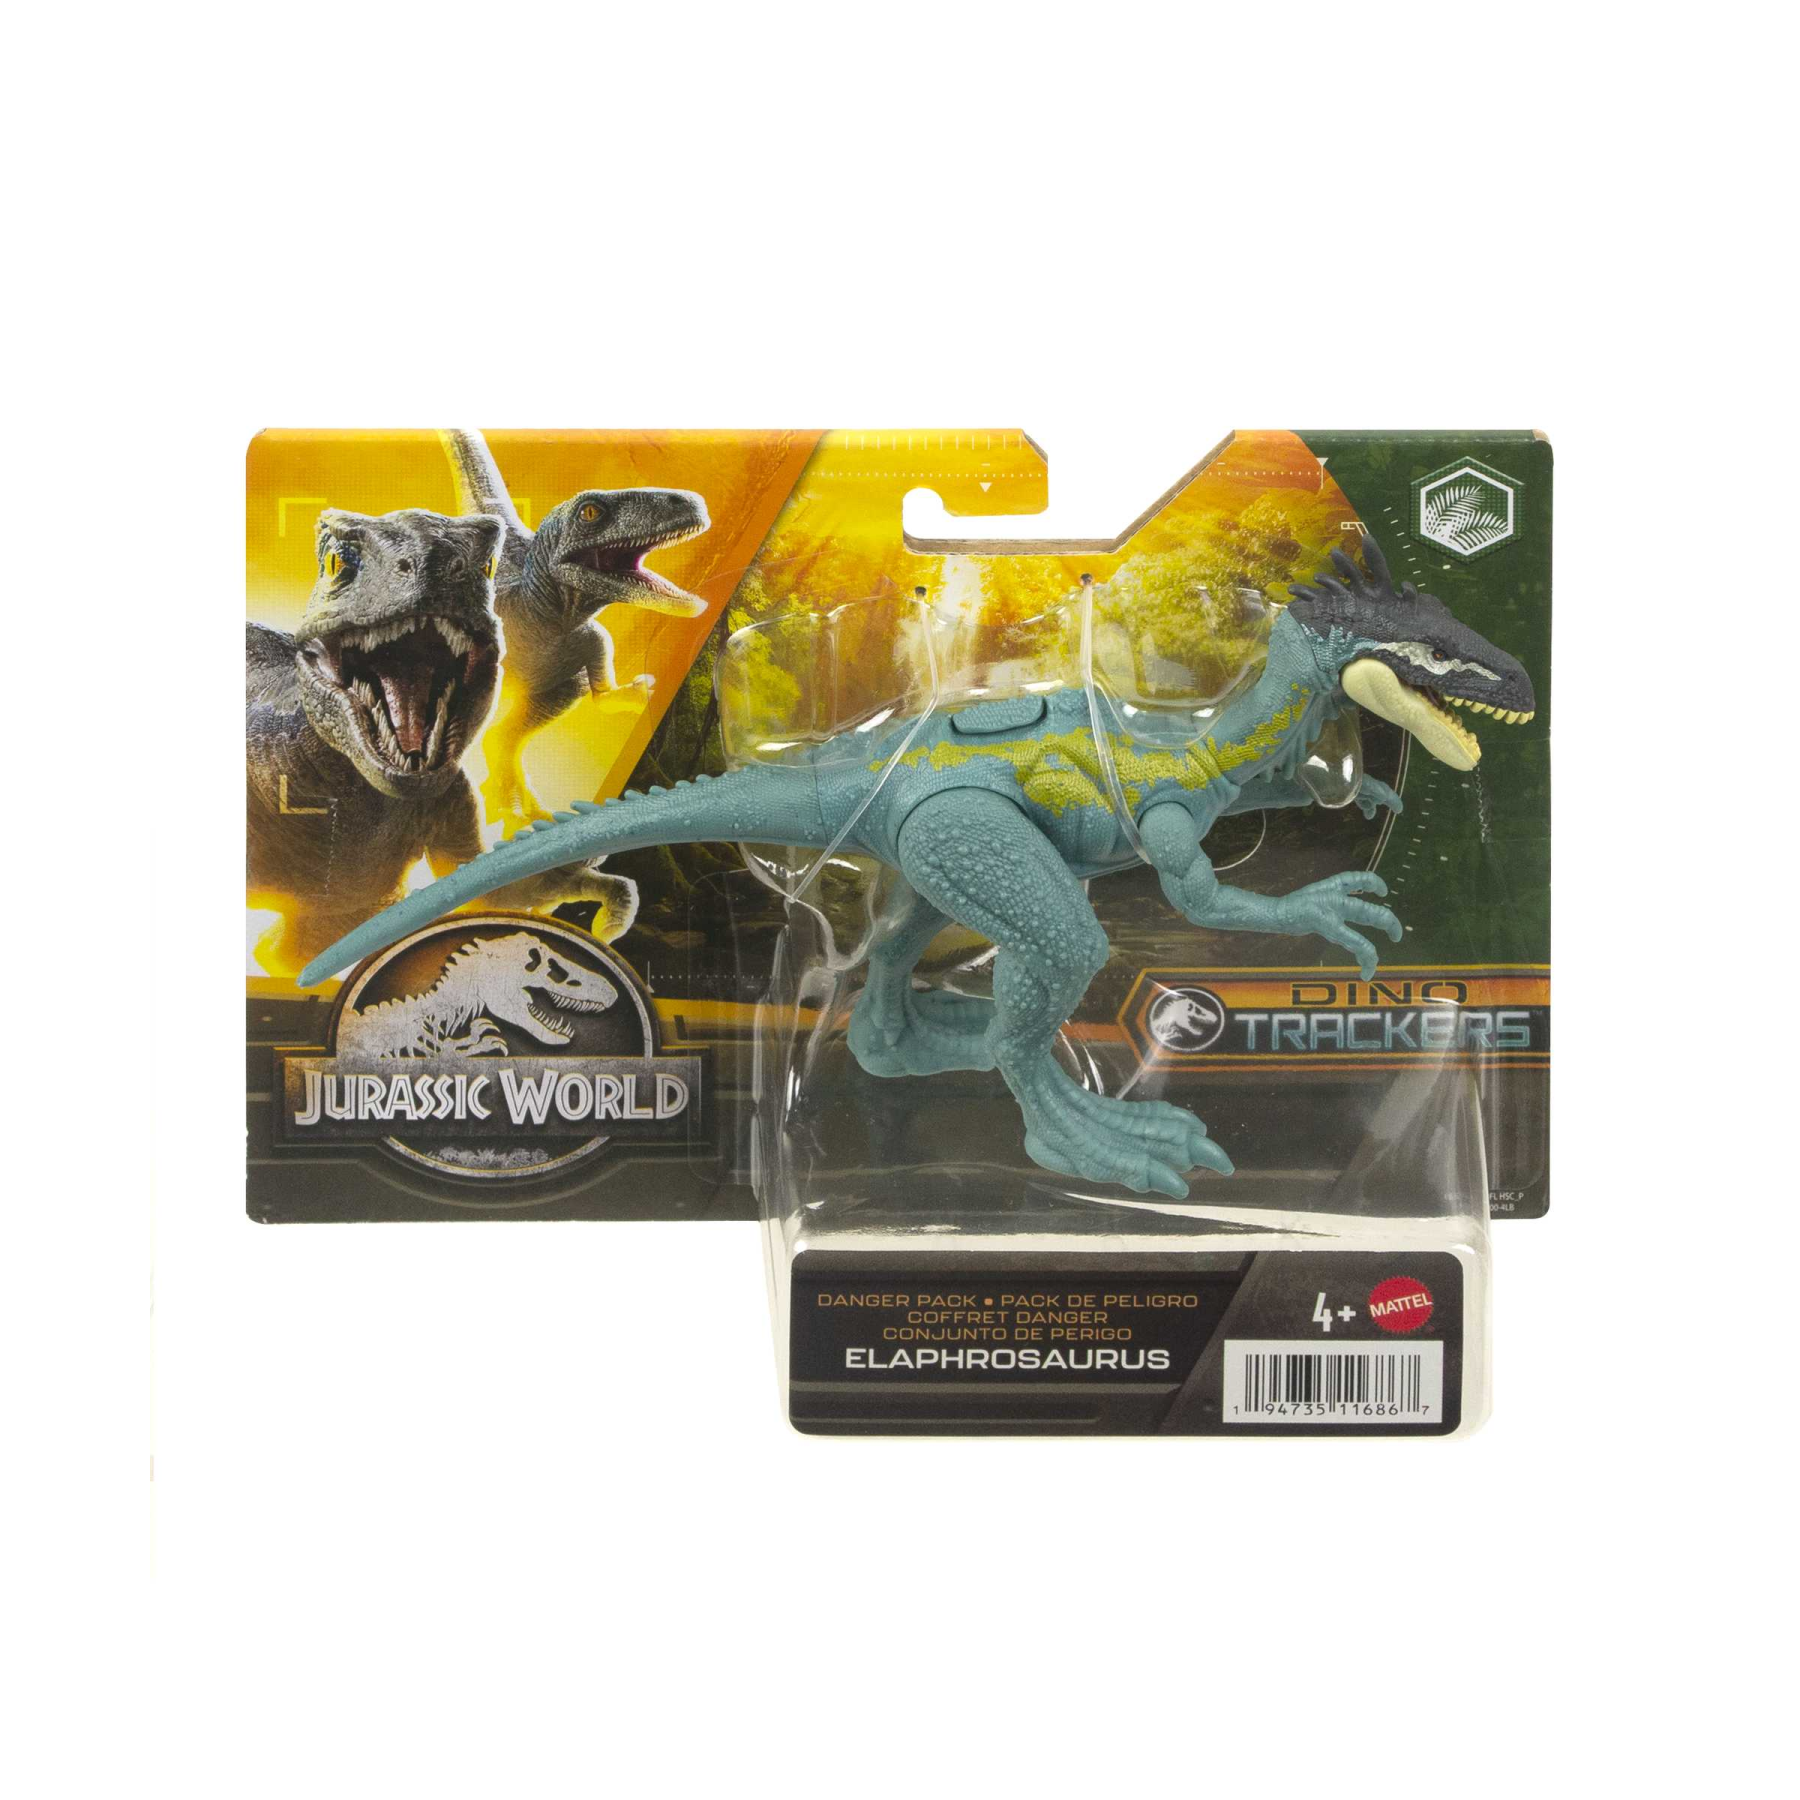 Jurassic world pericolo giurassico - elafrosauro, dinosauro snodato con design autentico, specie di medie dimensioni lungo 18 cm e alto 7+ cm, giocattolo per bambini, 4+ anni, hln59 - Jurassic World